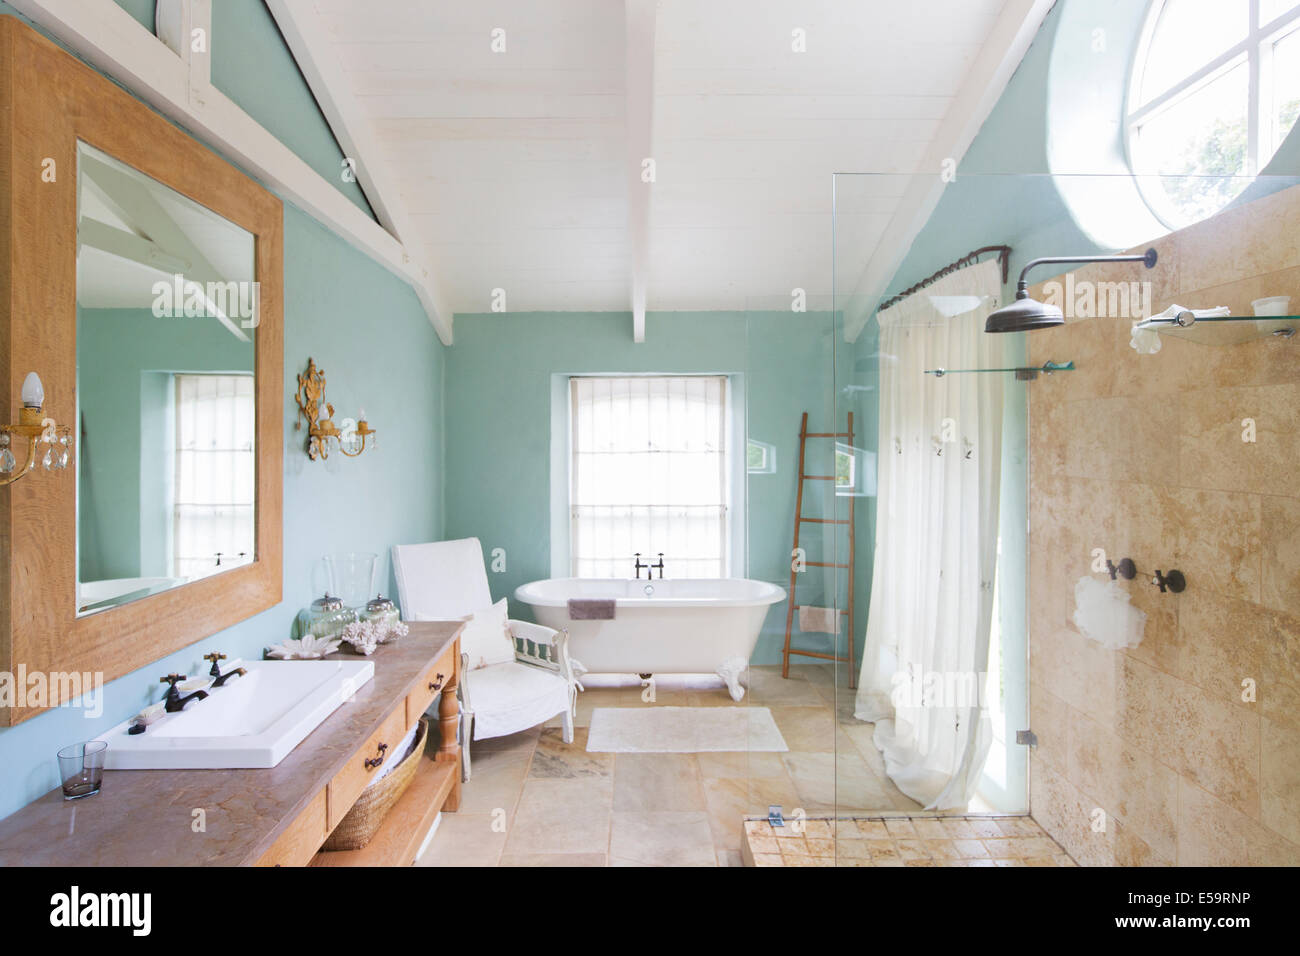 Bañera y ducha en el cuarto de baño rústico Foto de stock